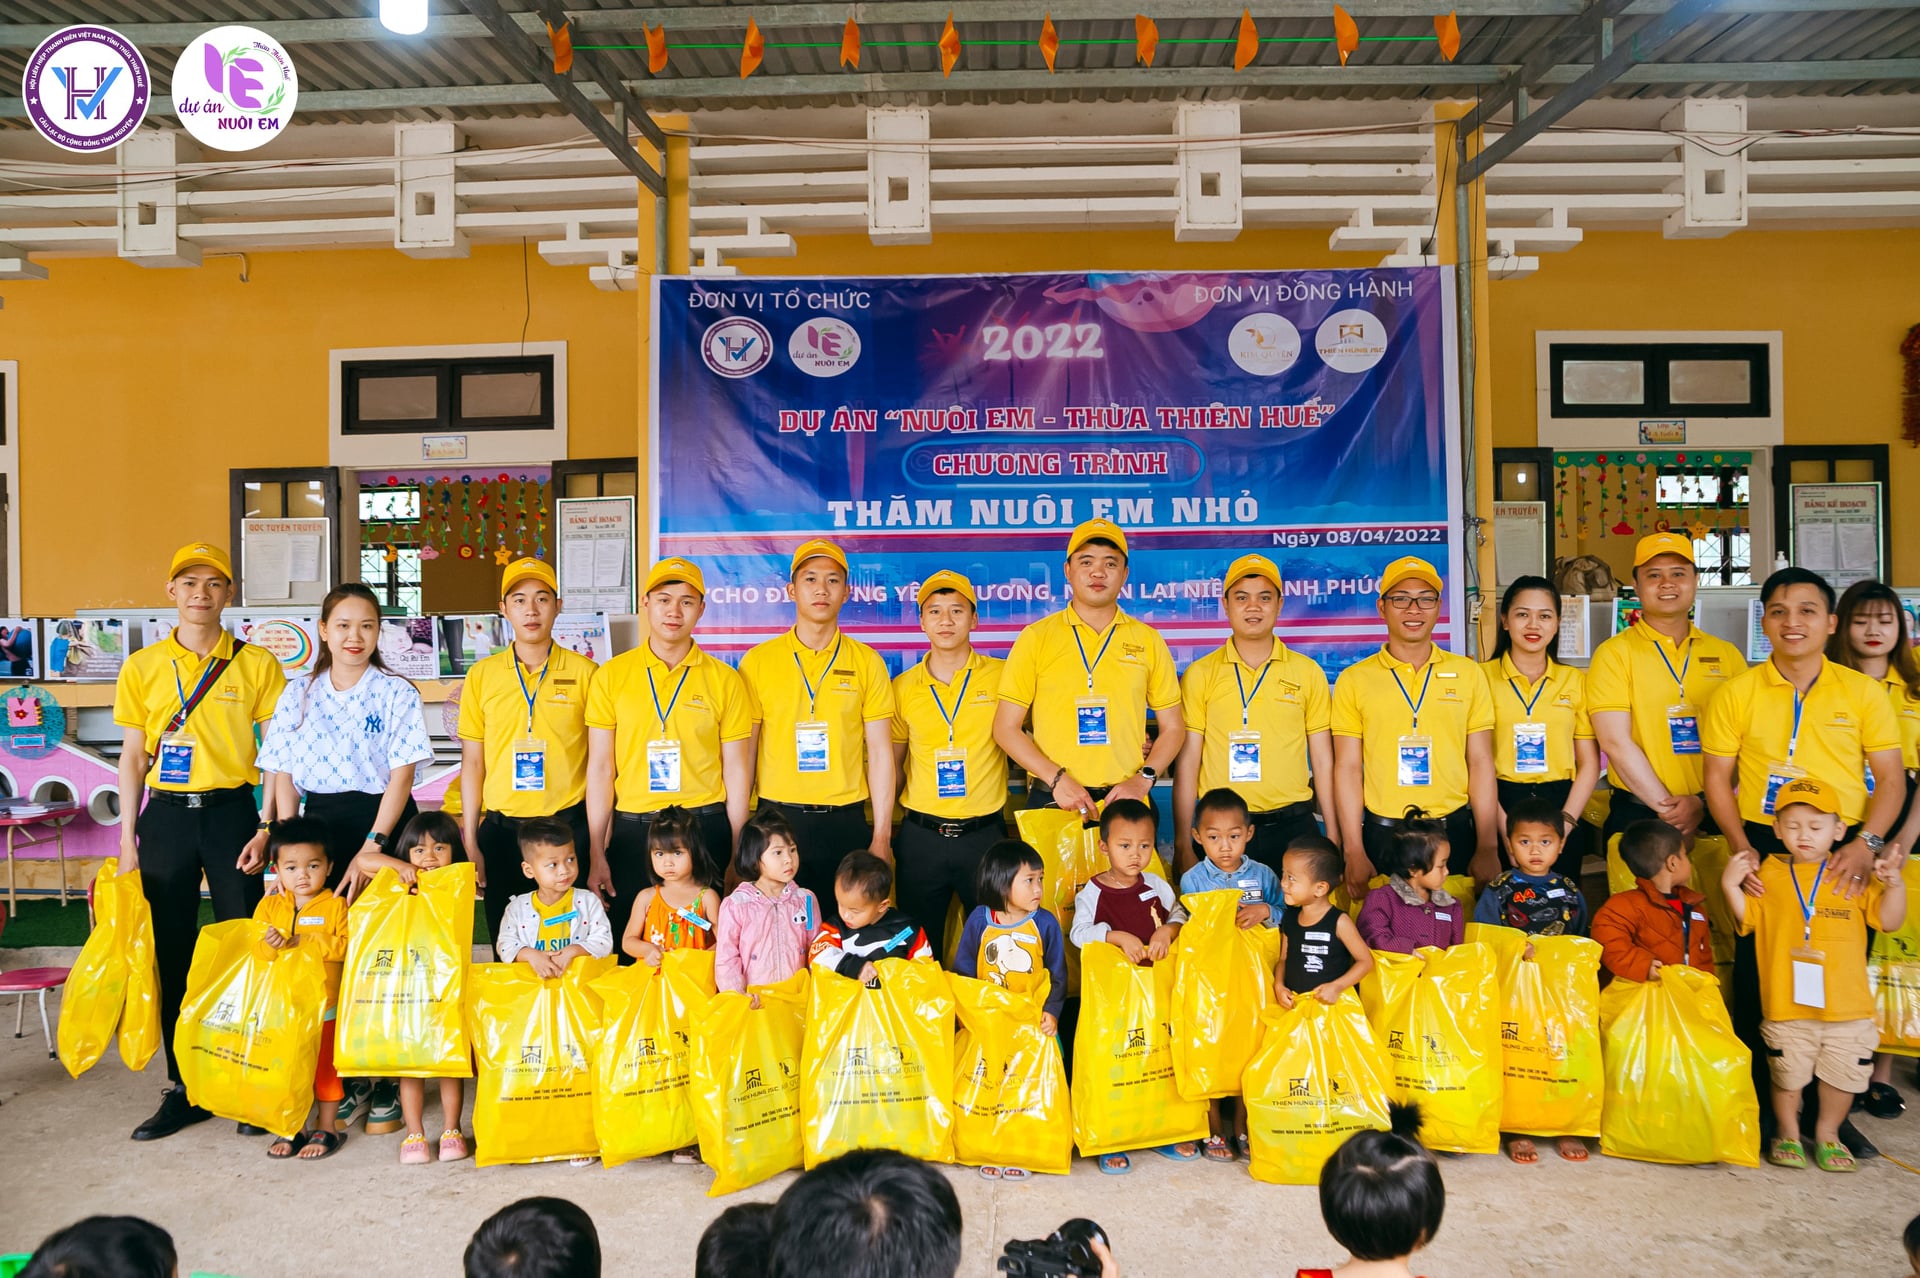 Với chỉ 150.000 đồng/tháng, hàng triệu người Việt đang “góp gạo” cùng dự án thiện nguyện này để mang đến những bữa cơm no cho hơn 4.000 trẻ vùng cao xứ Huế - Ảnh 4.